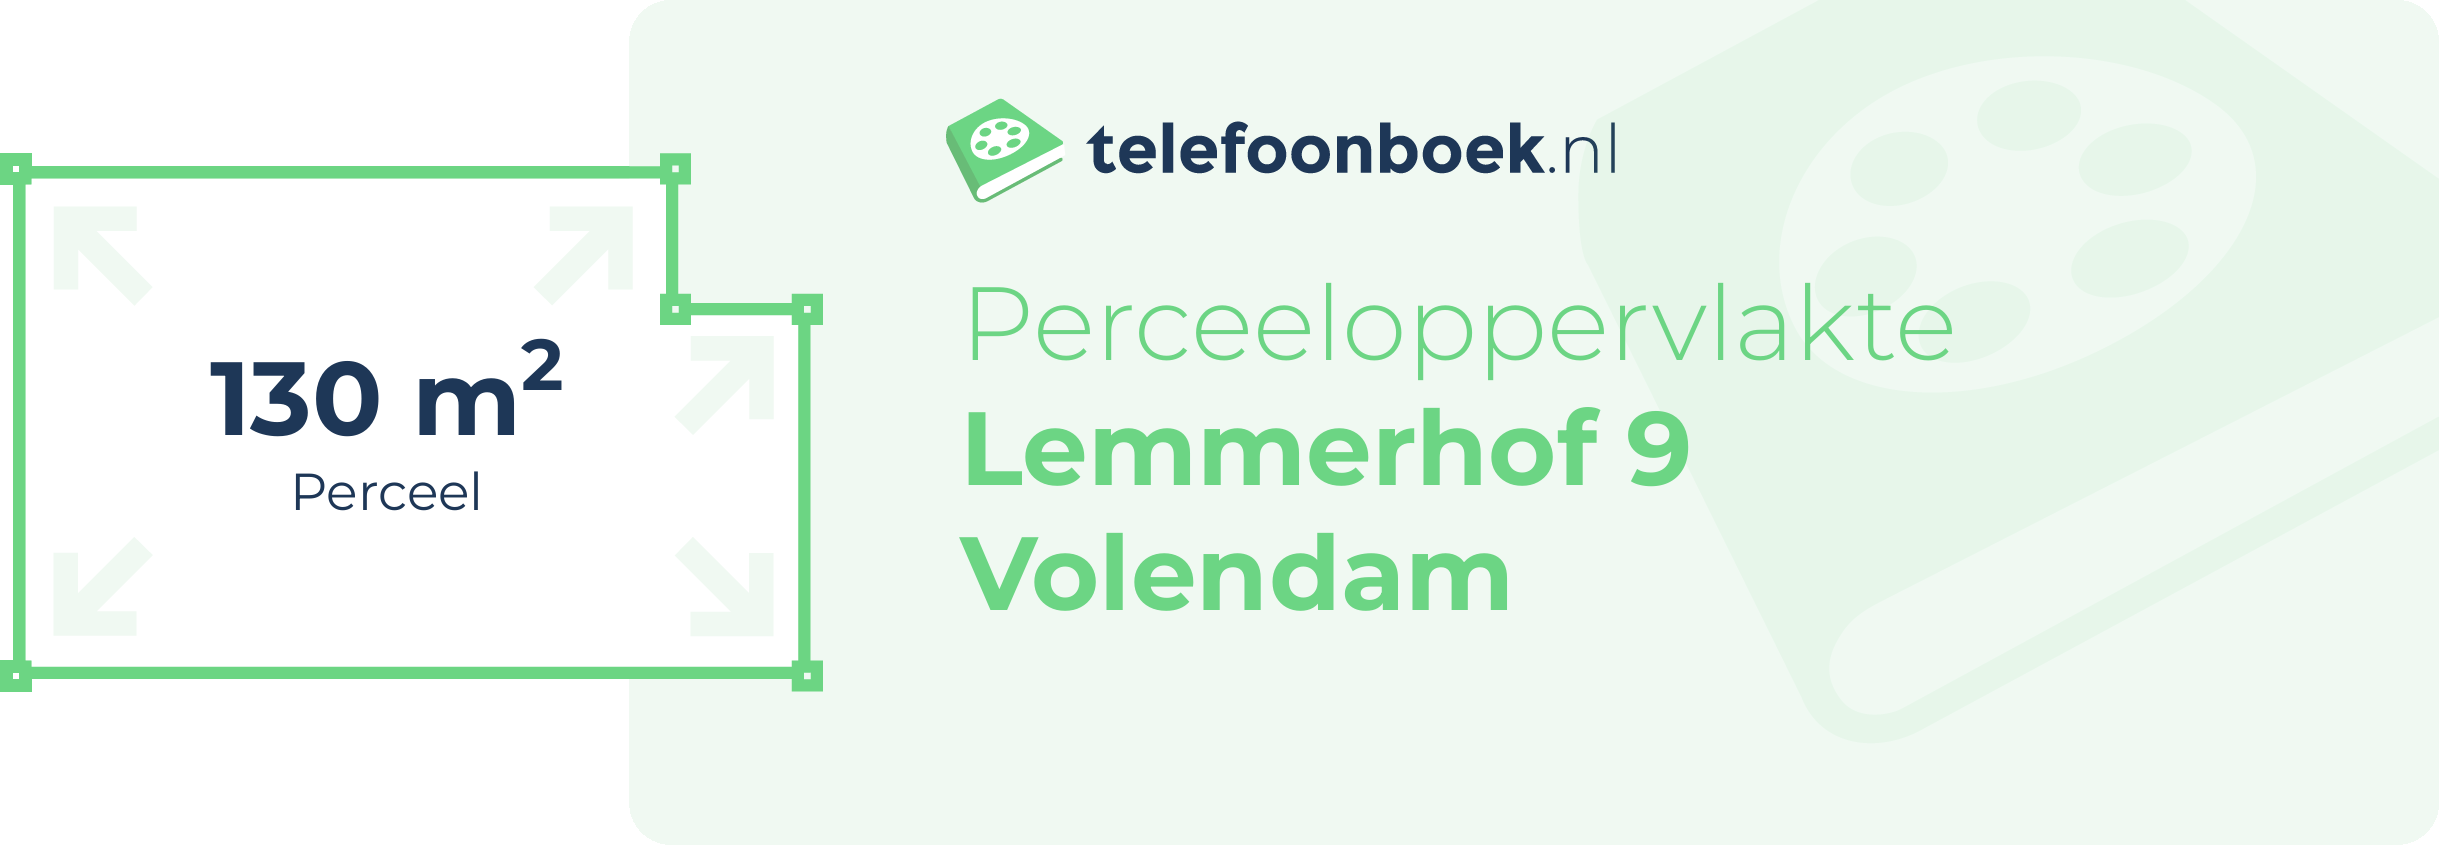 Perceeloppervlakte Lemmerhof 9 Volendam